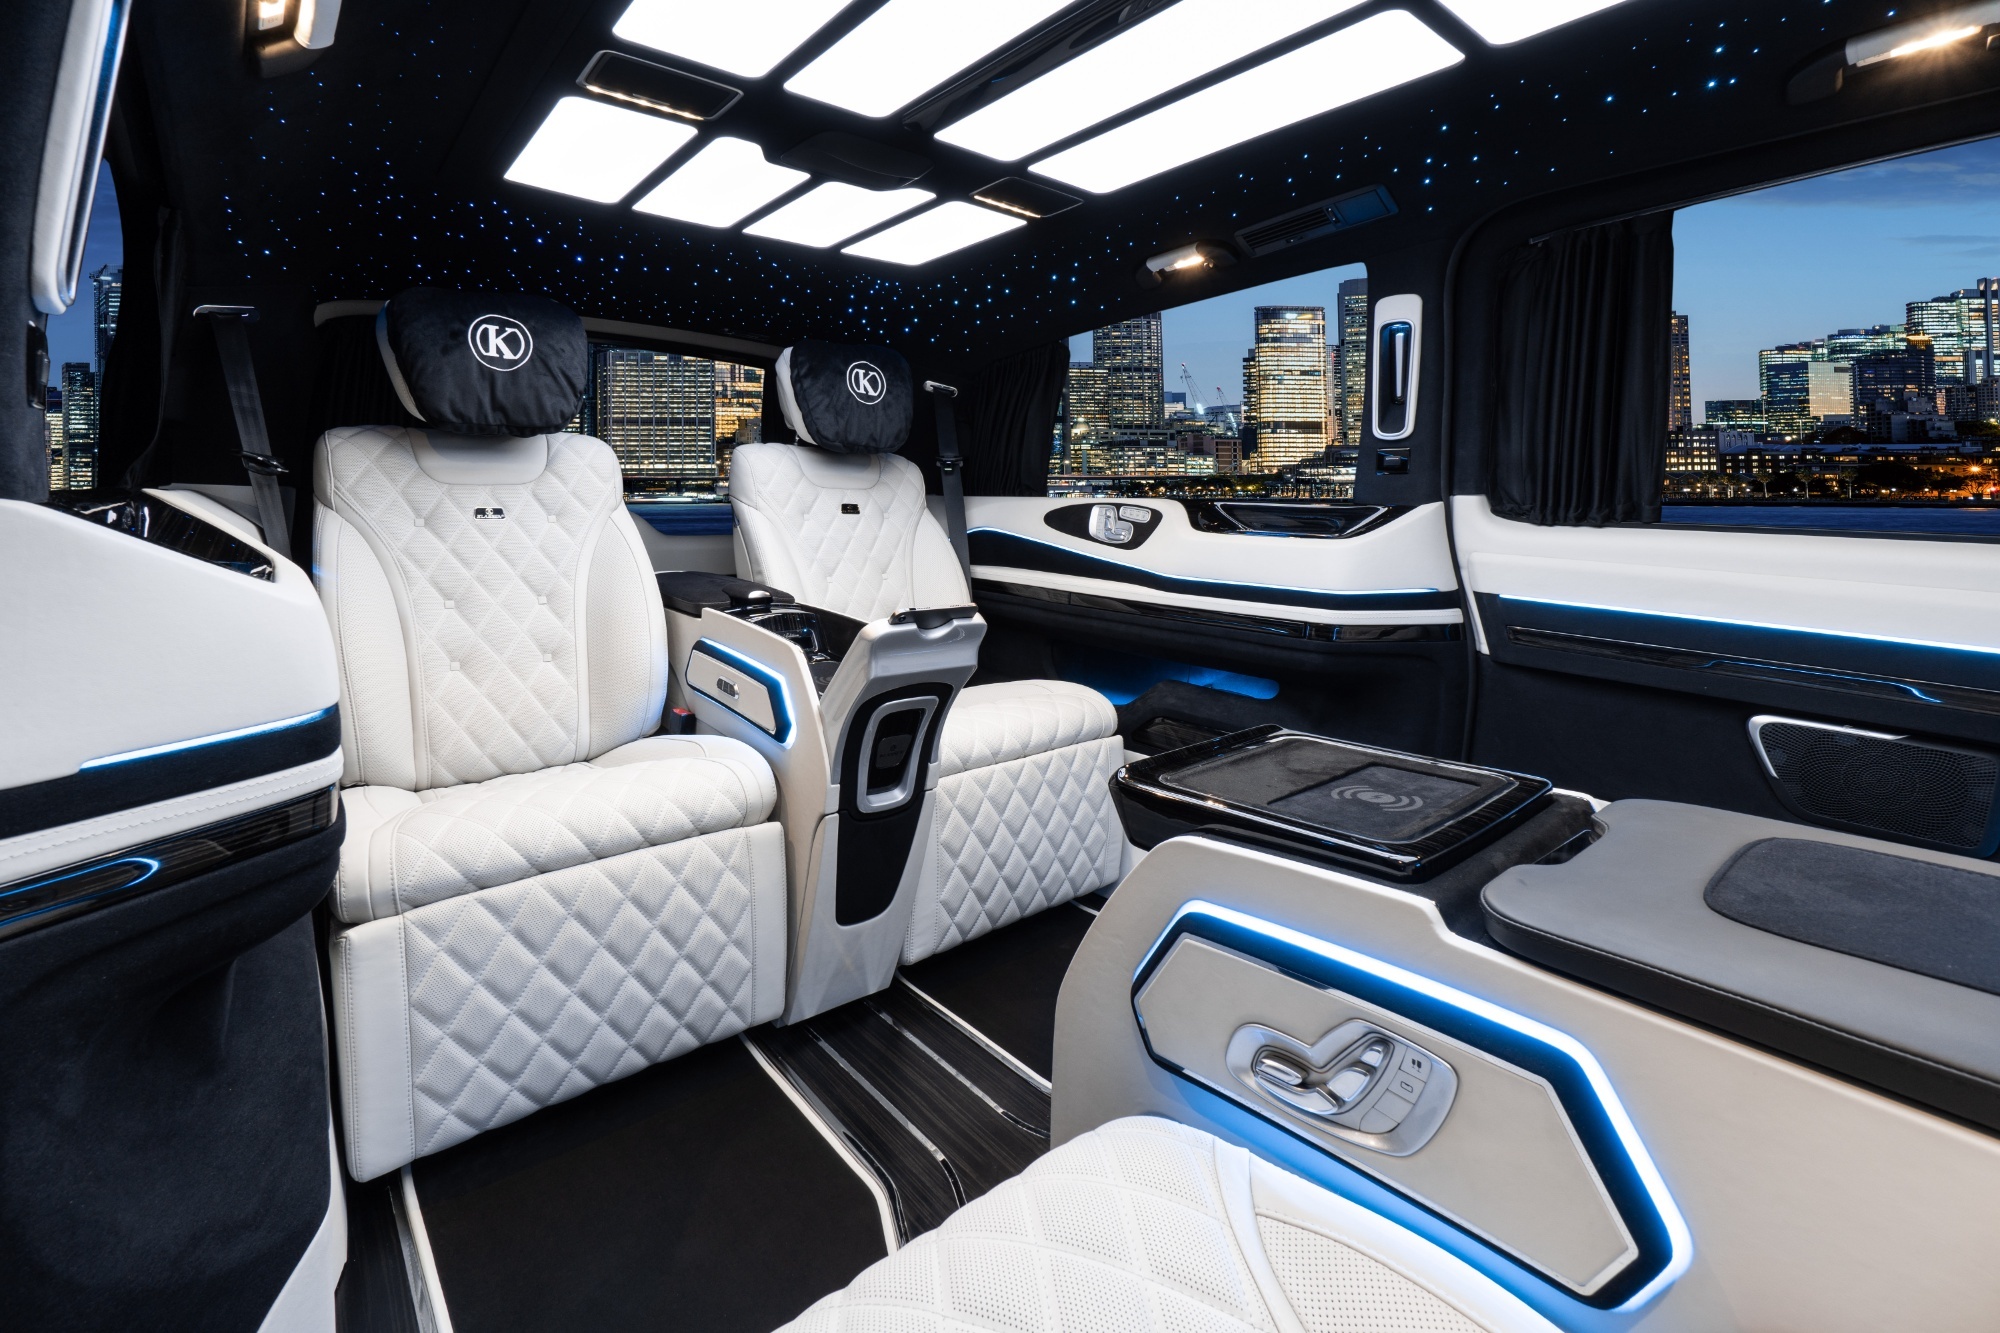 2023 Mercedes V Class Long + VIP Luxury FULL Review V300 Klassen Business  Edition Interior MVE_1614 